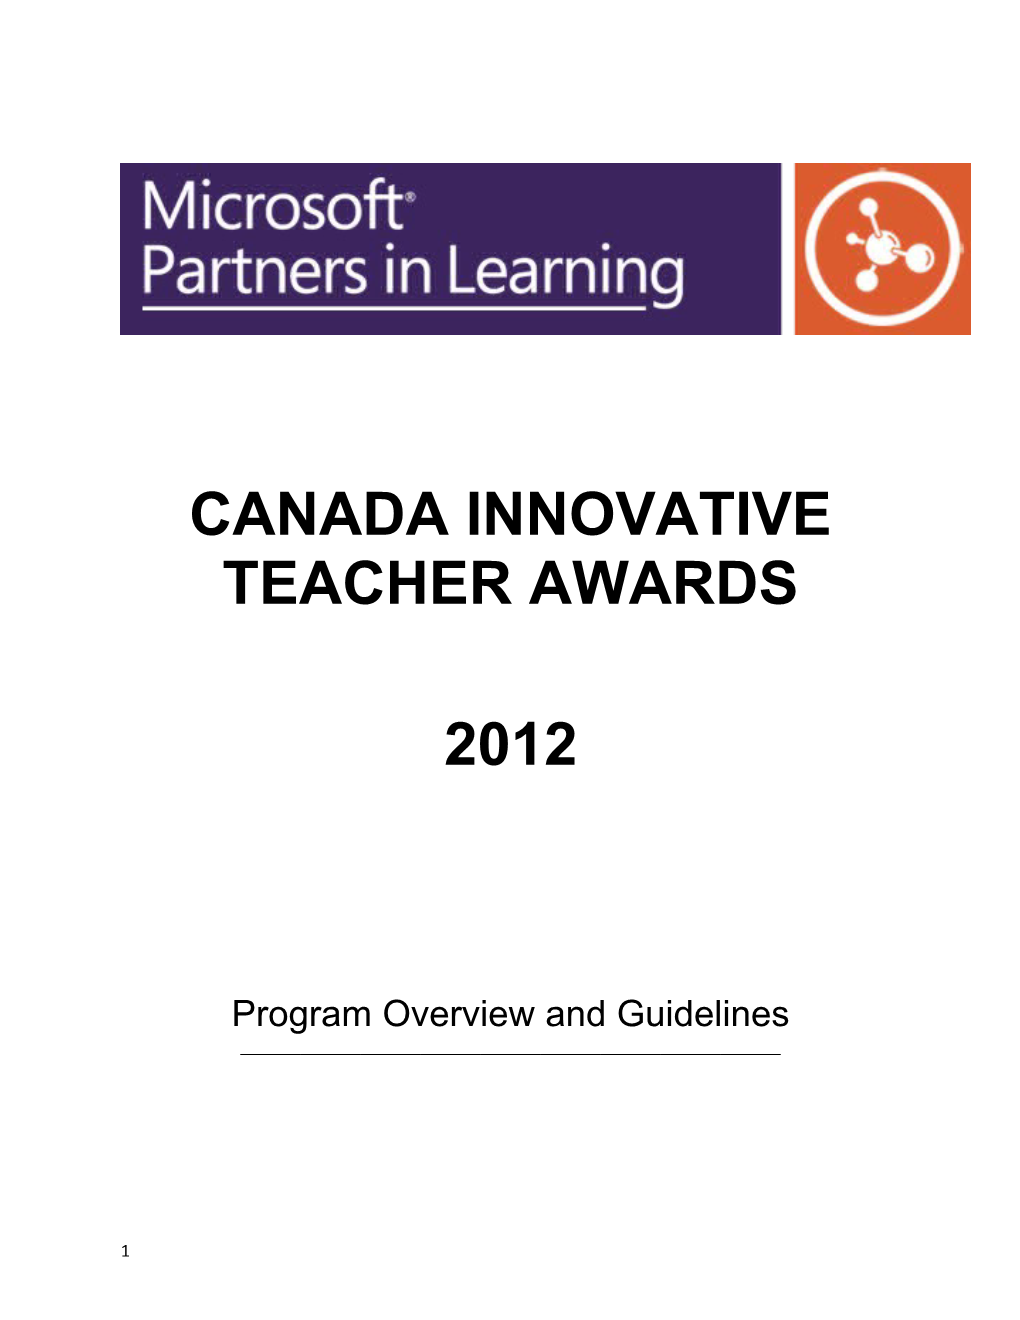 Canada Innovative Teacher Awards